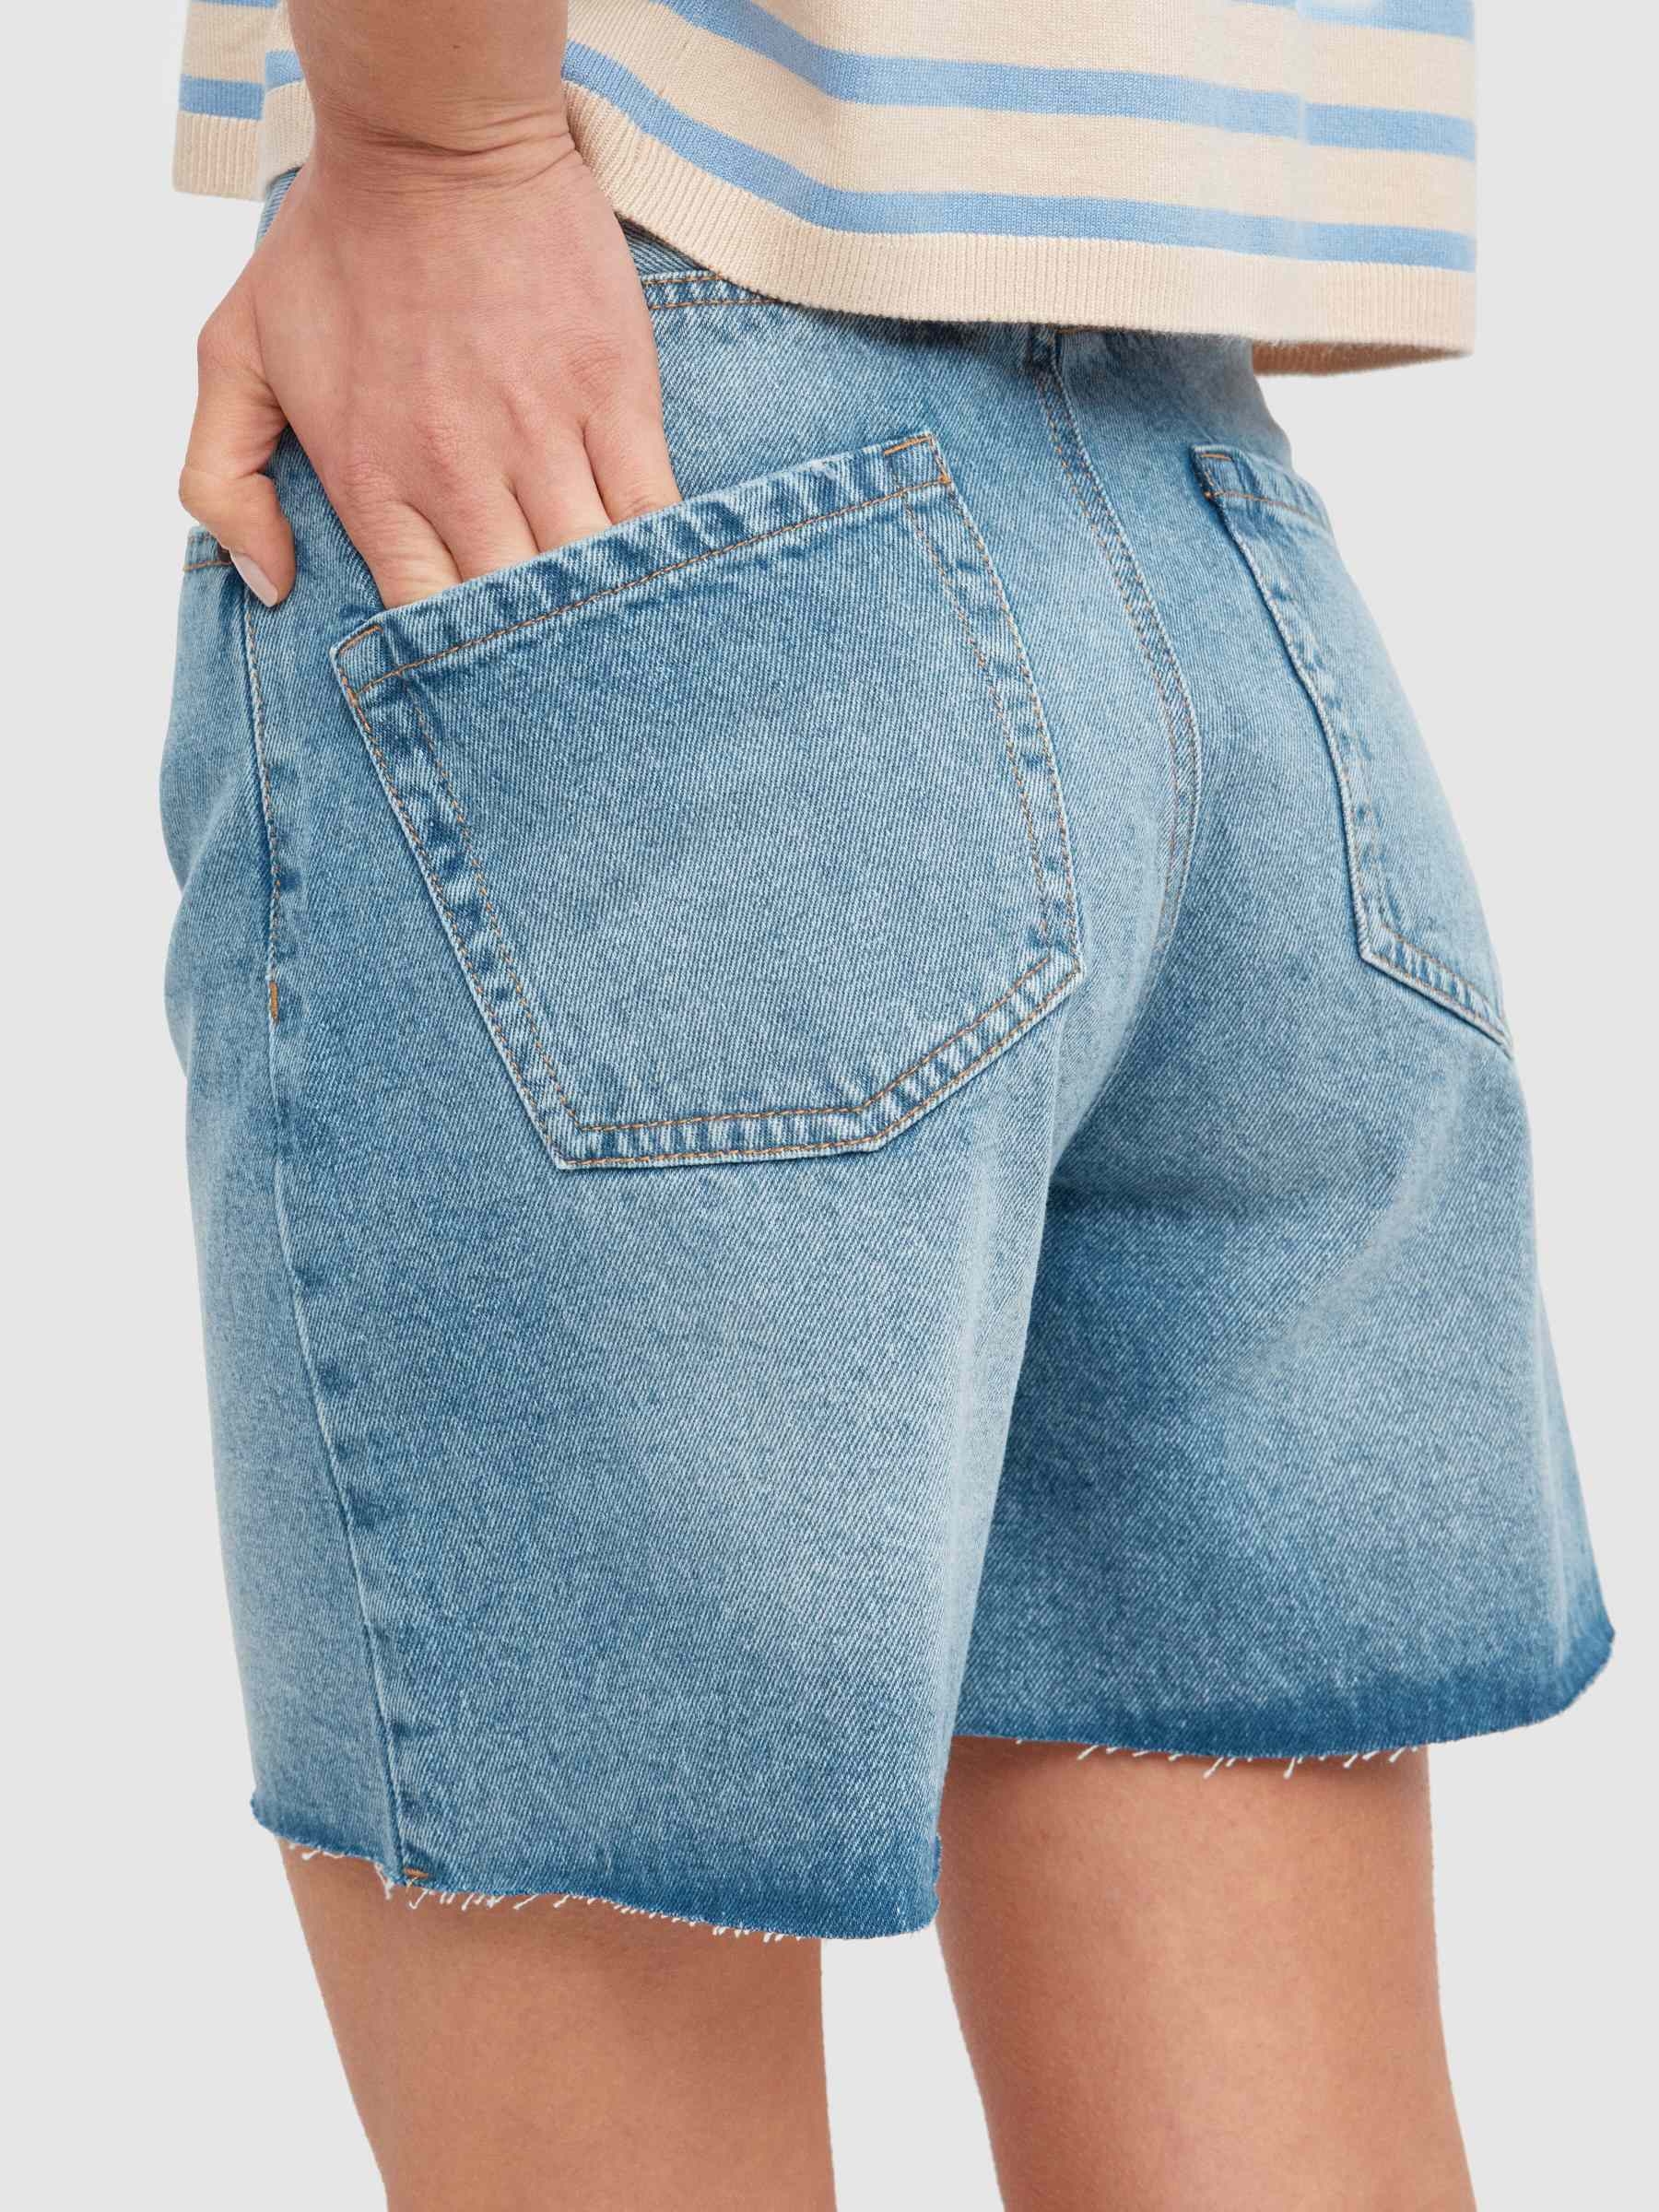 Pantalones Cortos Mujer · Comprar online en Trendz